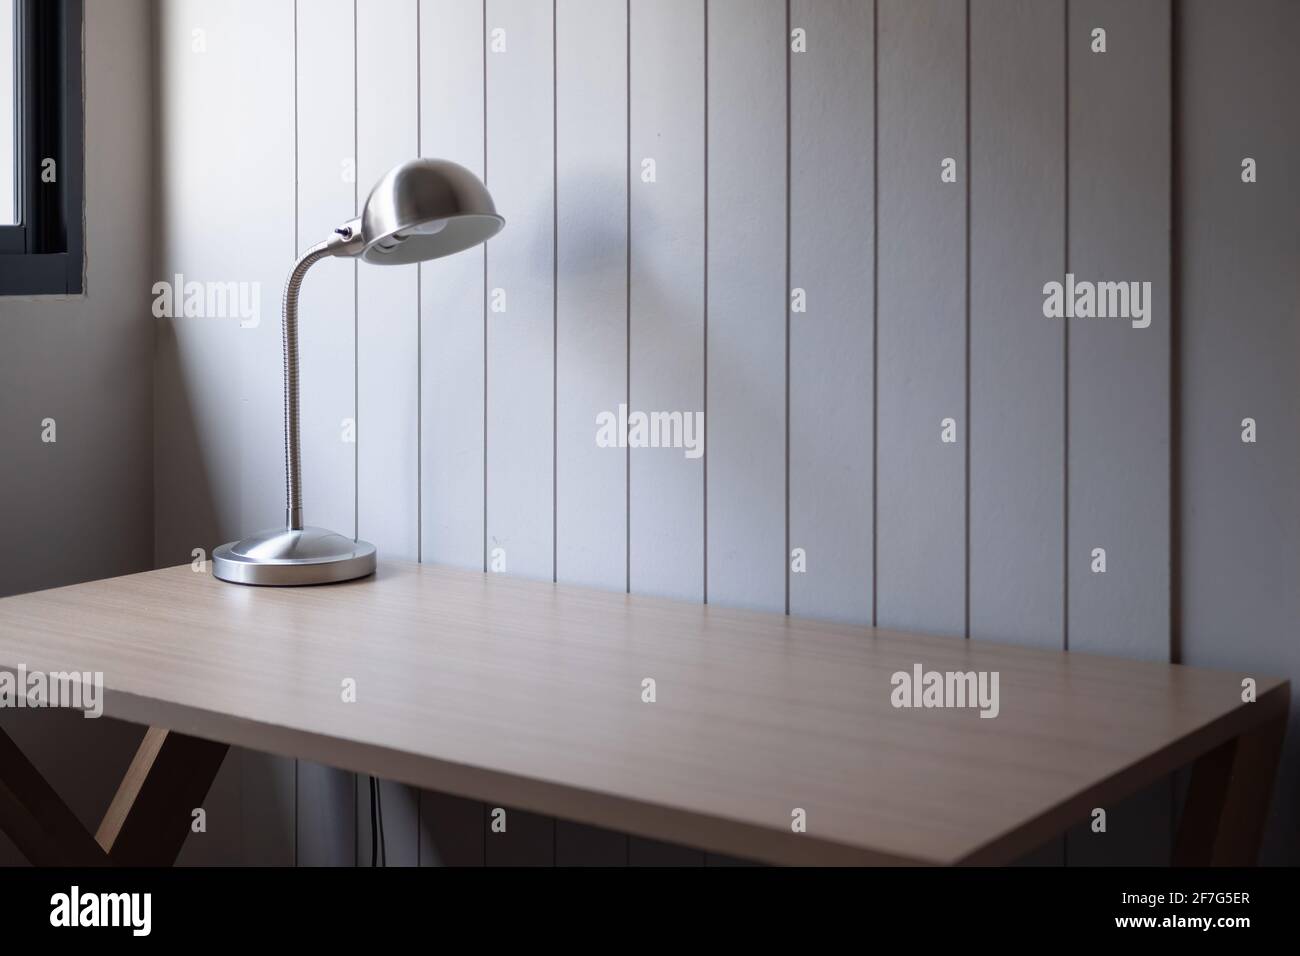 Arbeitsplatz mit Platz - Lampe auf altem Holztisch mit Raum von rauer Zementwand in weißem Farbton Stockfoto